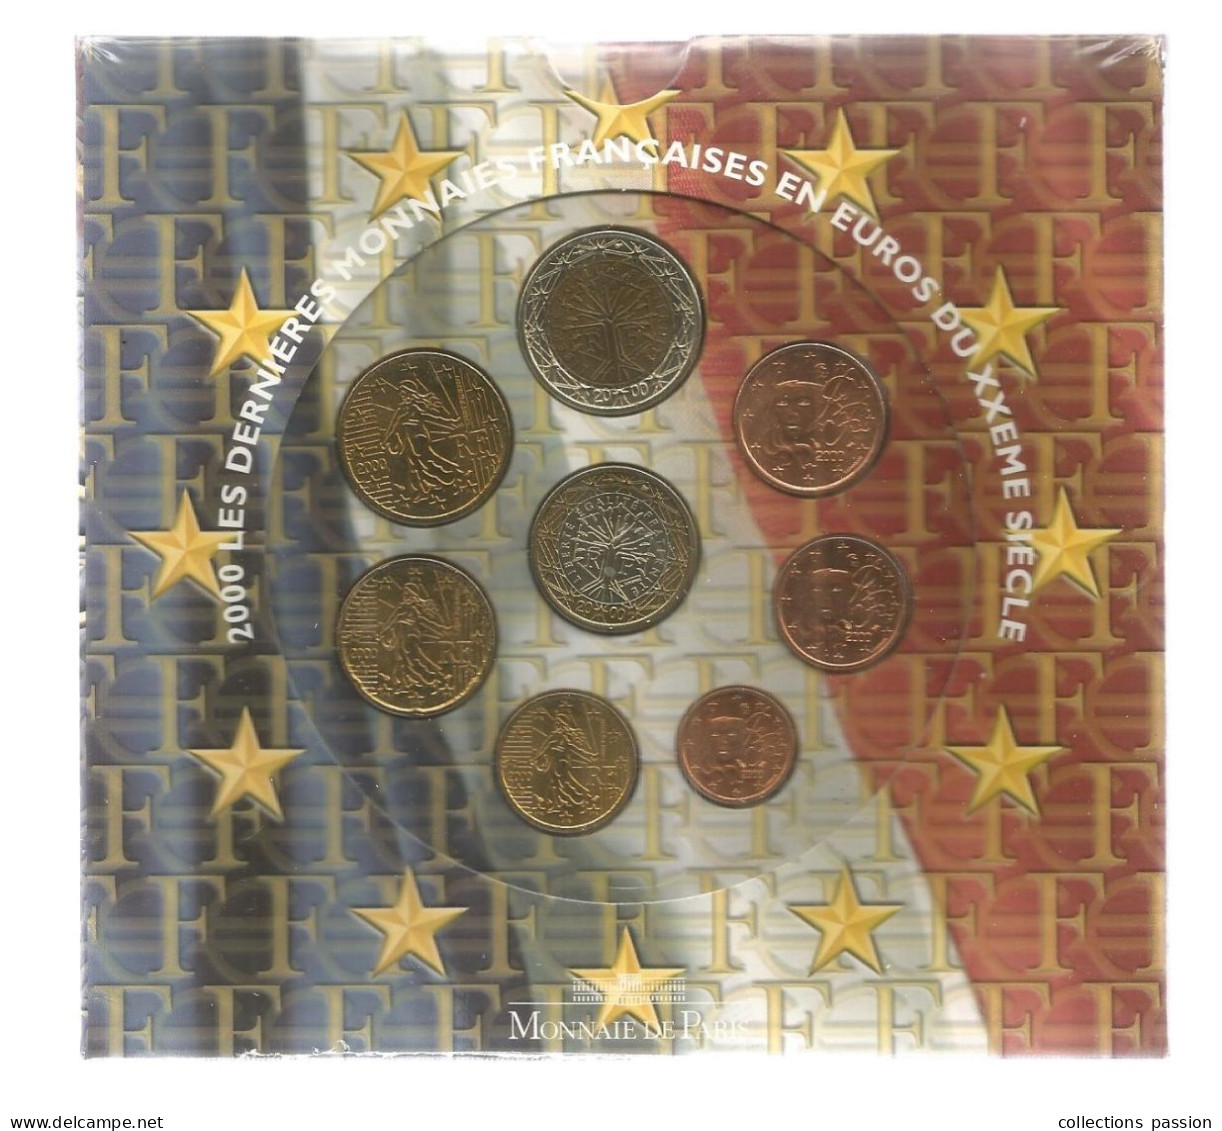 Monnaie, Coffret, Emballage D'origine Scéllé, EURO France, Brillant Universel , Série Officielle, 2000, Frais Fr 3.50 E - France